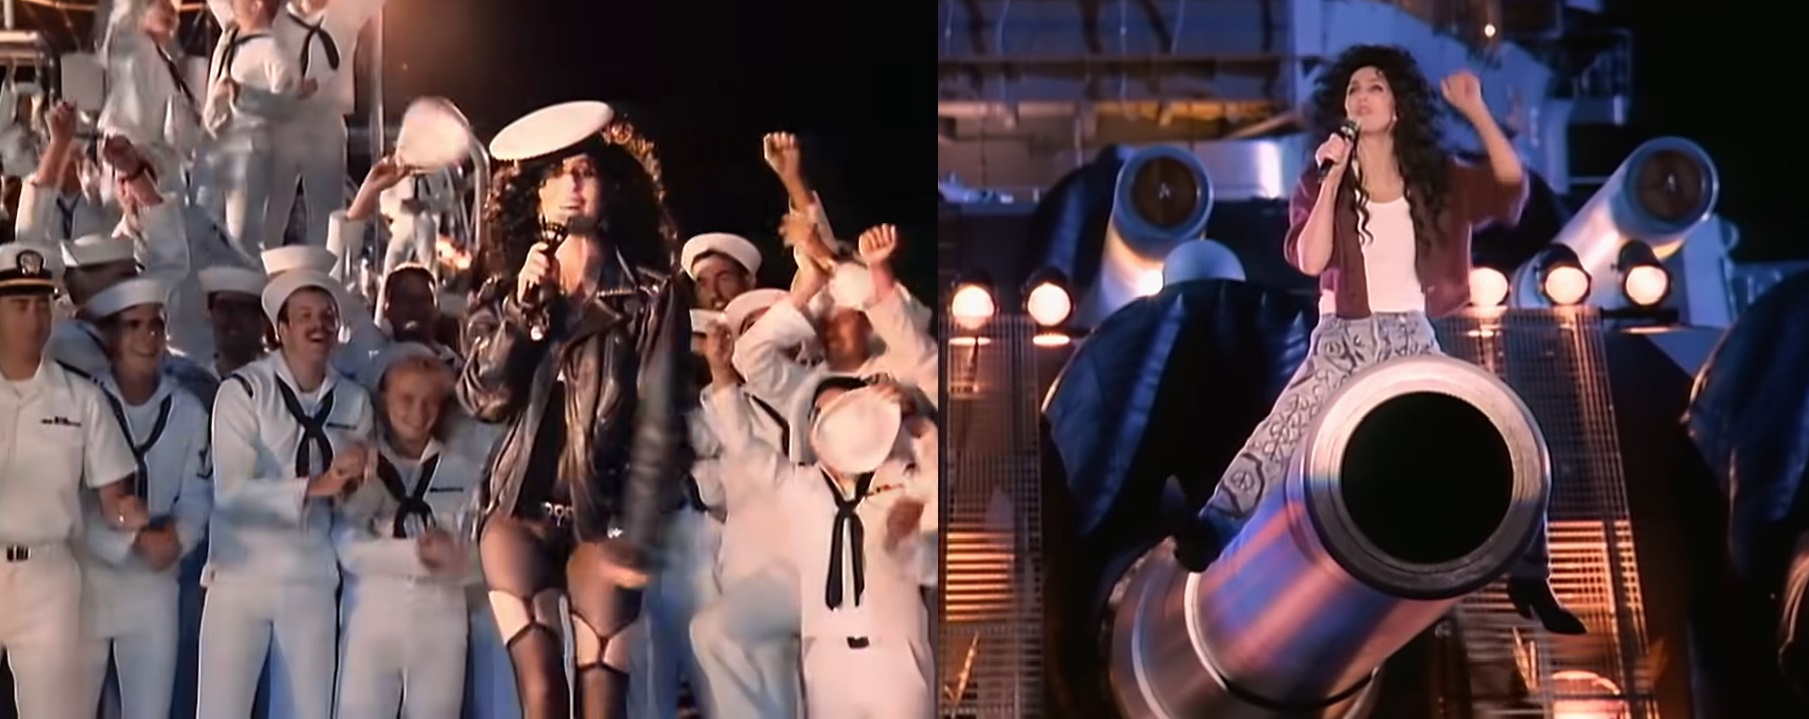 Η ημίγυμνη εμφάνιση της Cher στο ιστορικό θωρηκτό Μιζούρι, ήταν η απάντηση του ναυτικού στο Top Gun. Αποδείχθηκε φιάσκο